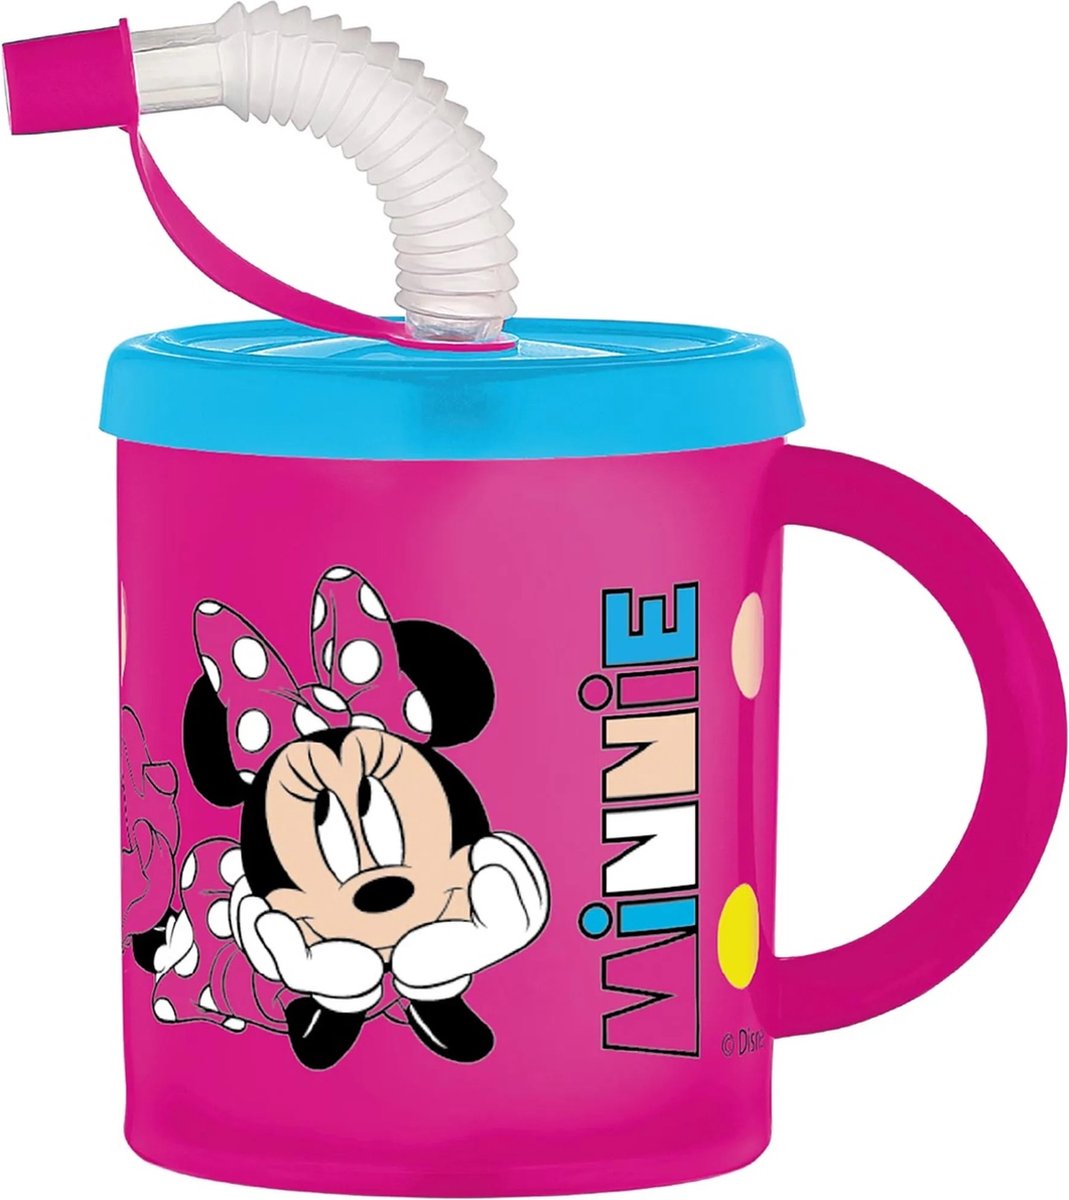 Drinkbeker Minnie Mouse 210ml met rietje